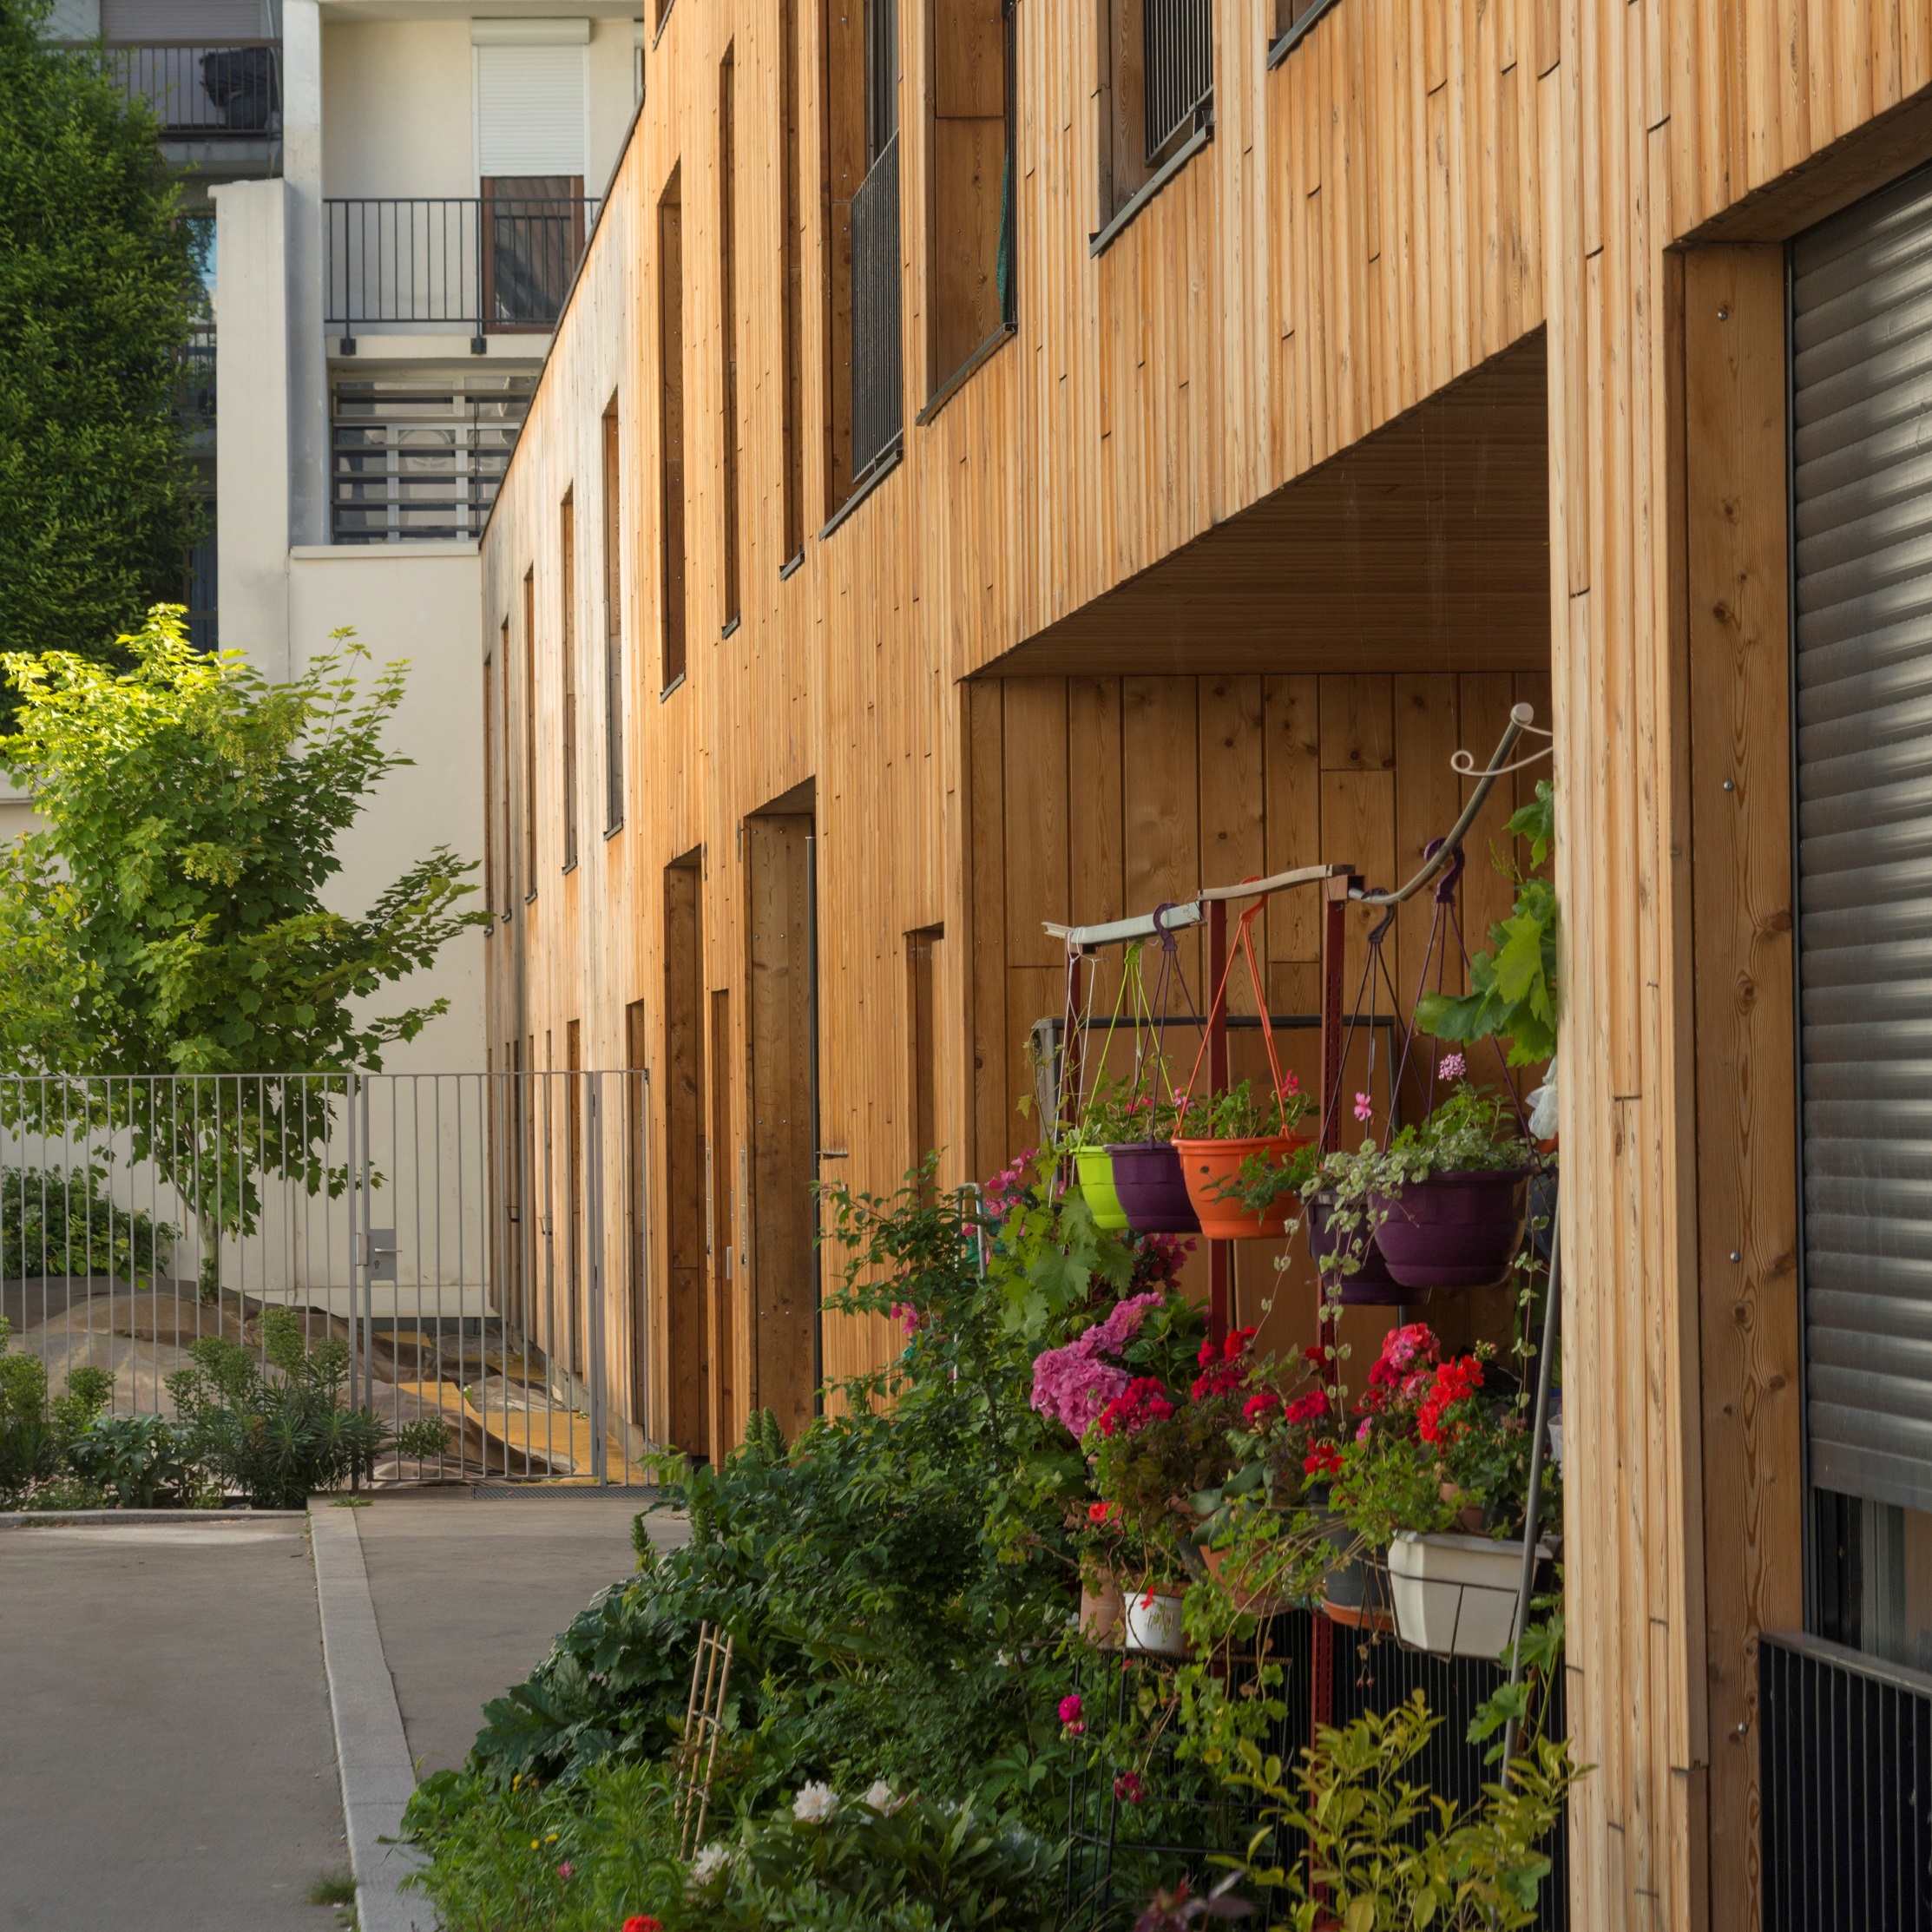 Terrasse végétalisée au rez-de-chaussée du bâtiment en bois qui accueillent 24 logement sociaux rue Lourmel, Paris 15.